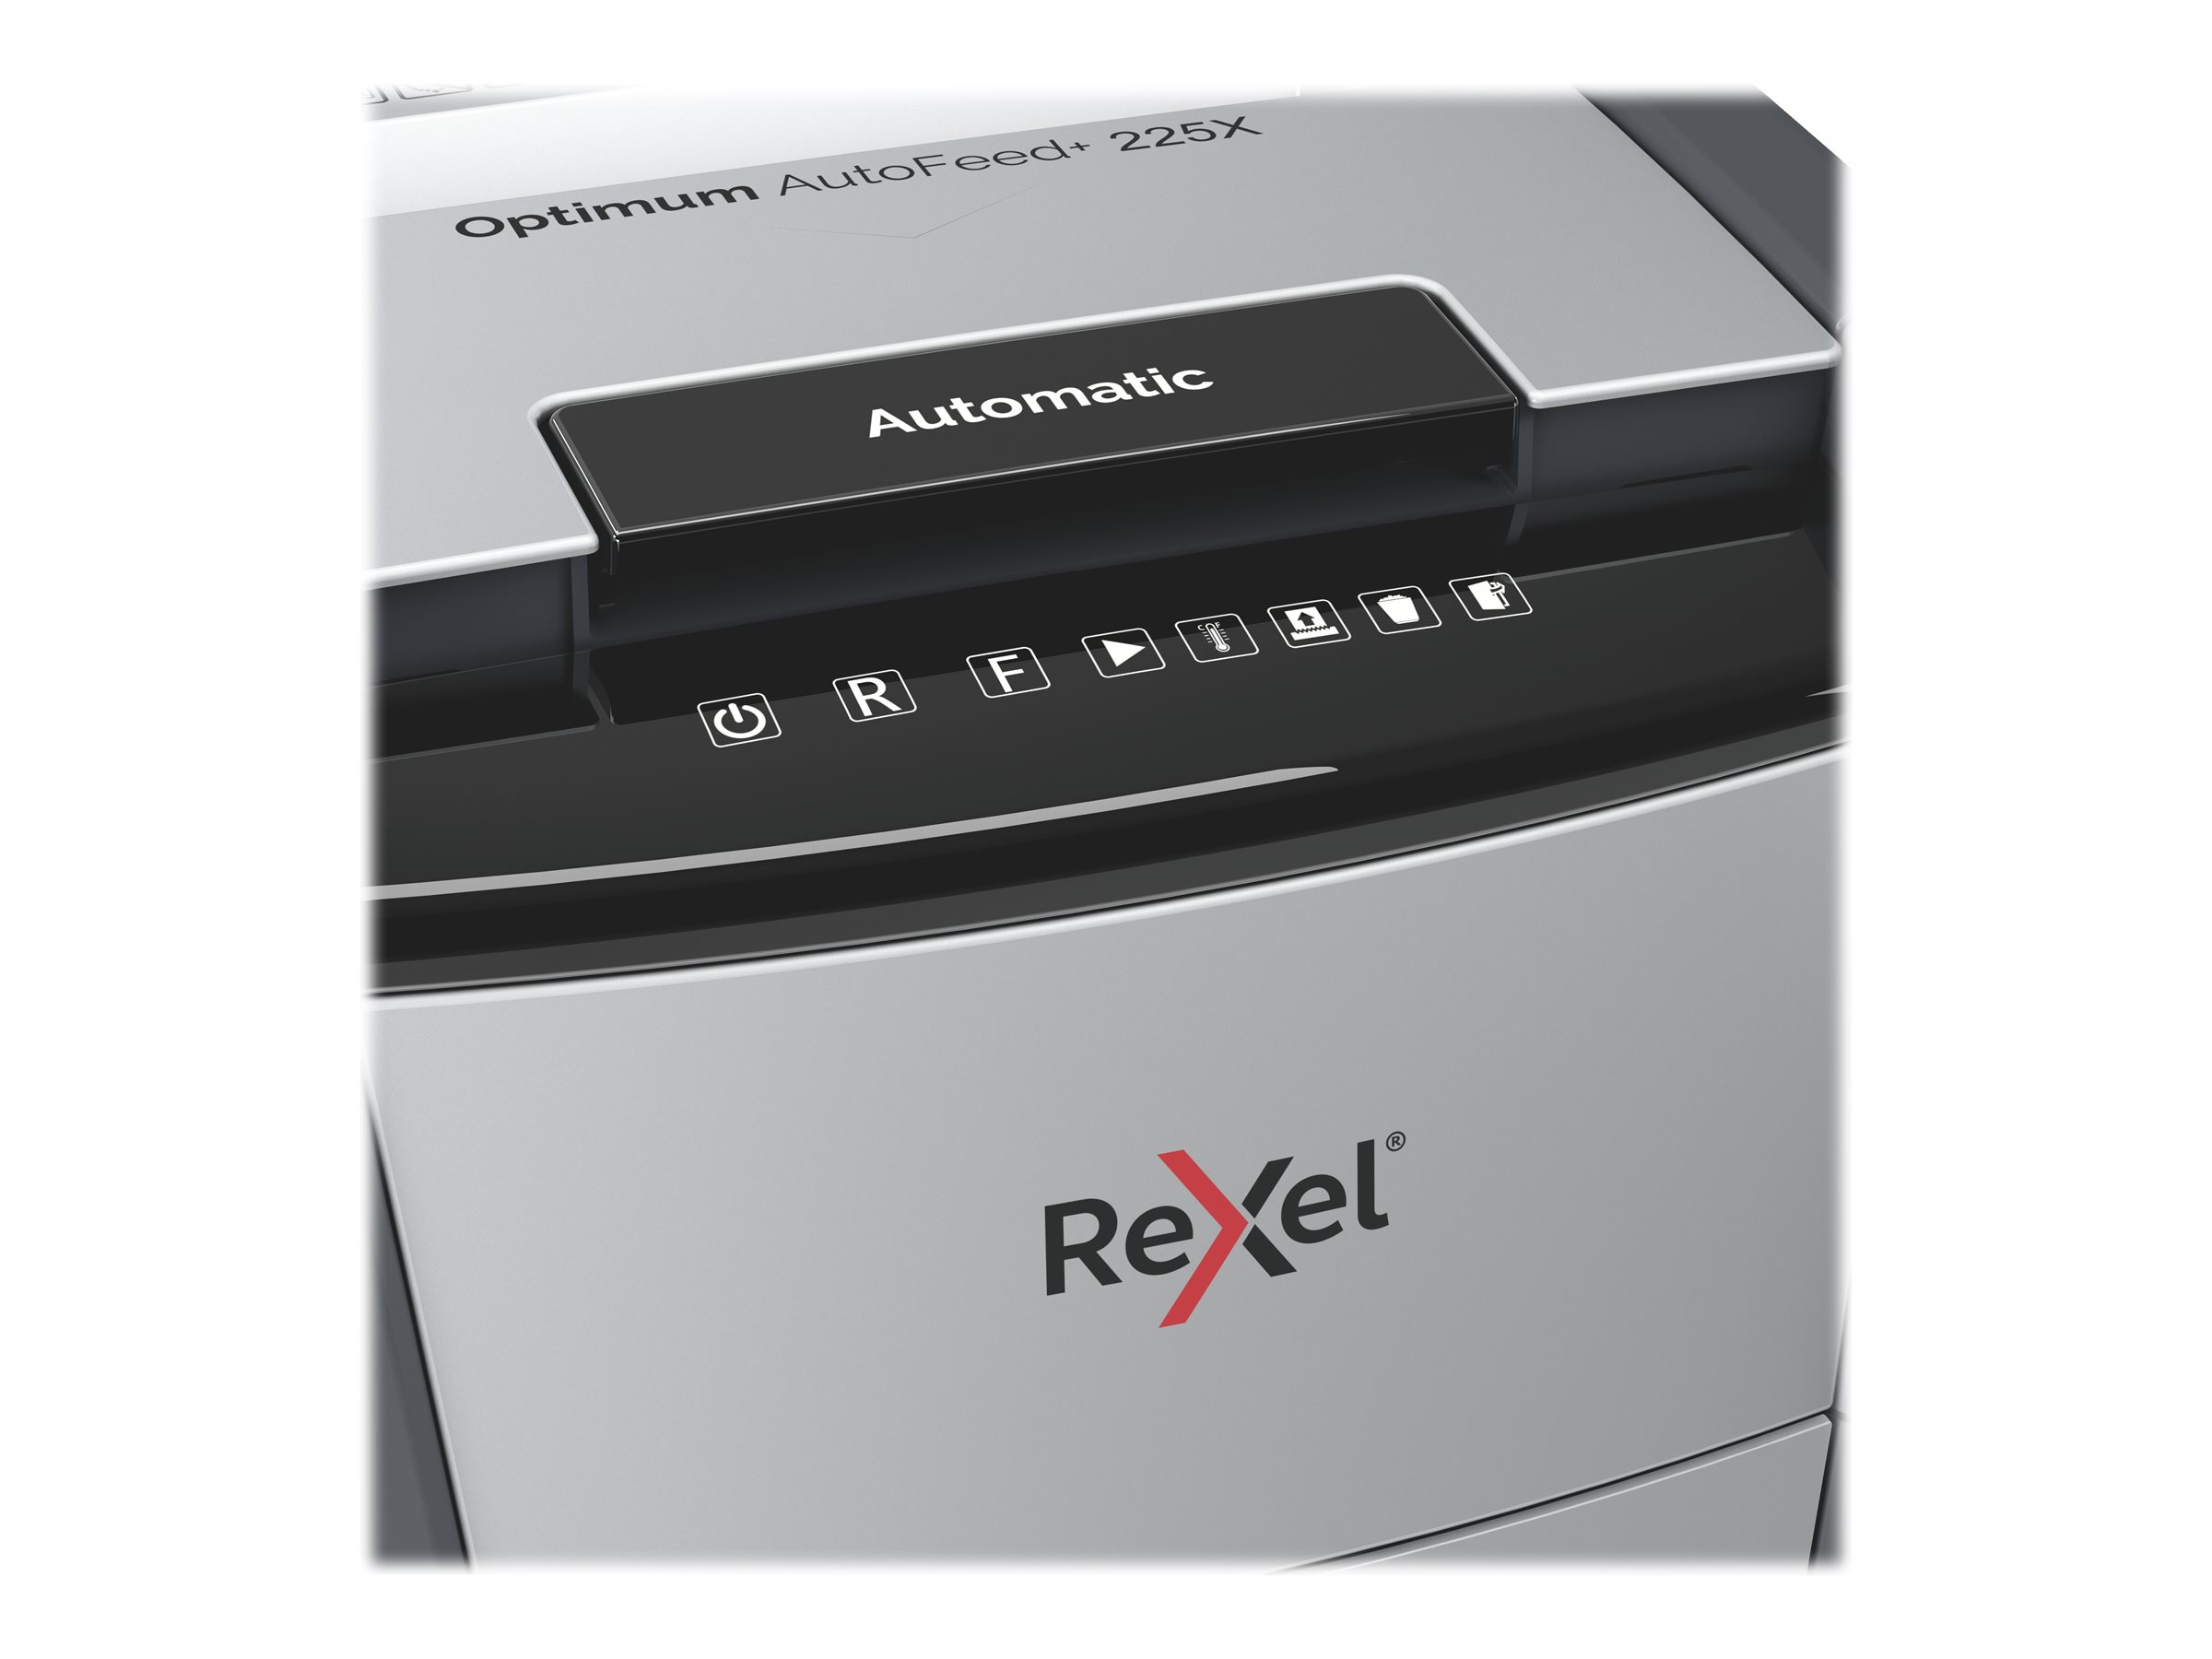 Rexel Optimum AutoFeed+ 225X - Vorzerkleinerer